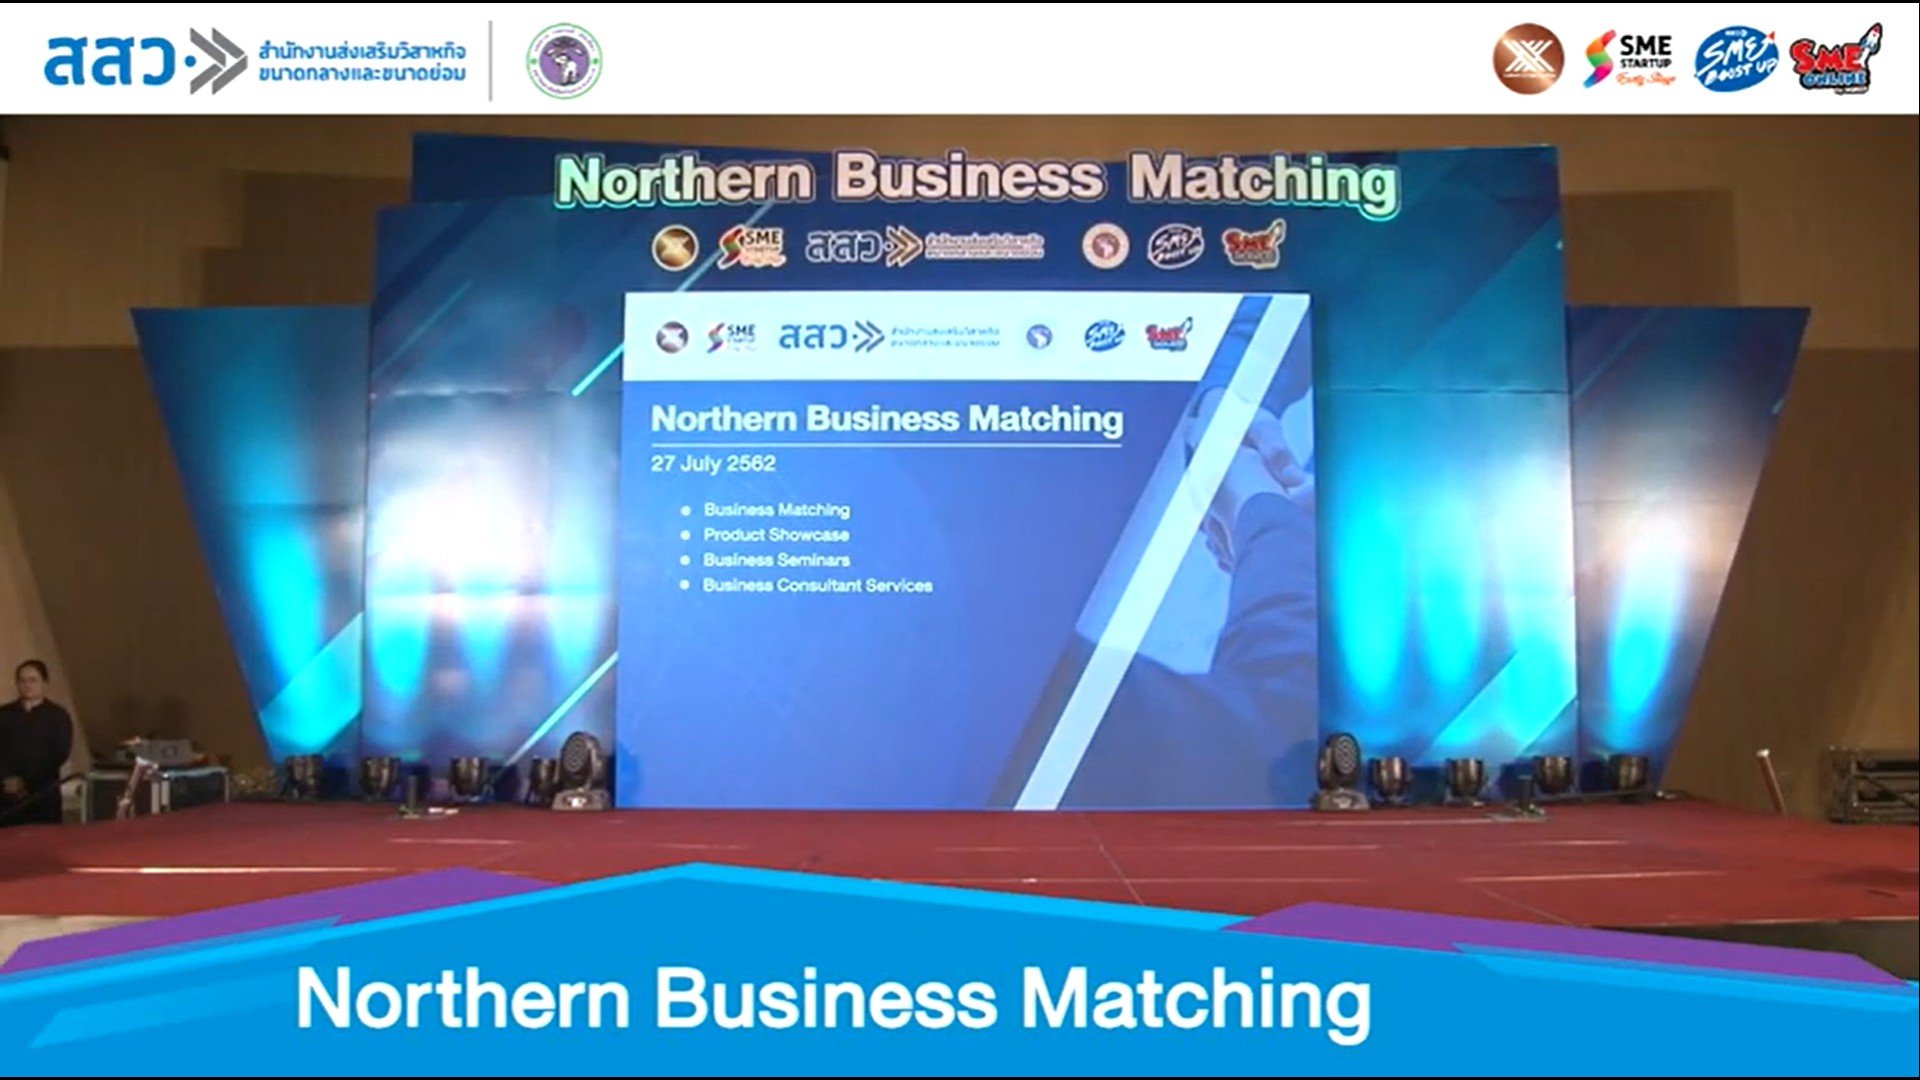 สสว.ร่วมกับศูนย์นวัตกรรมและการจัดการความรู้ มหาวิทยาลัยเชียงใหม่ ขอเชิญเข้าร่วมกิจกรรม “Northern Business Matching” กิจกรรมภายใต้โครงการ Micro to be SMEs, Early-Stage, Boost Up New Entrepreneurs และ SME Online ปี 2562